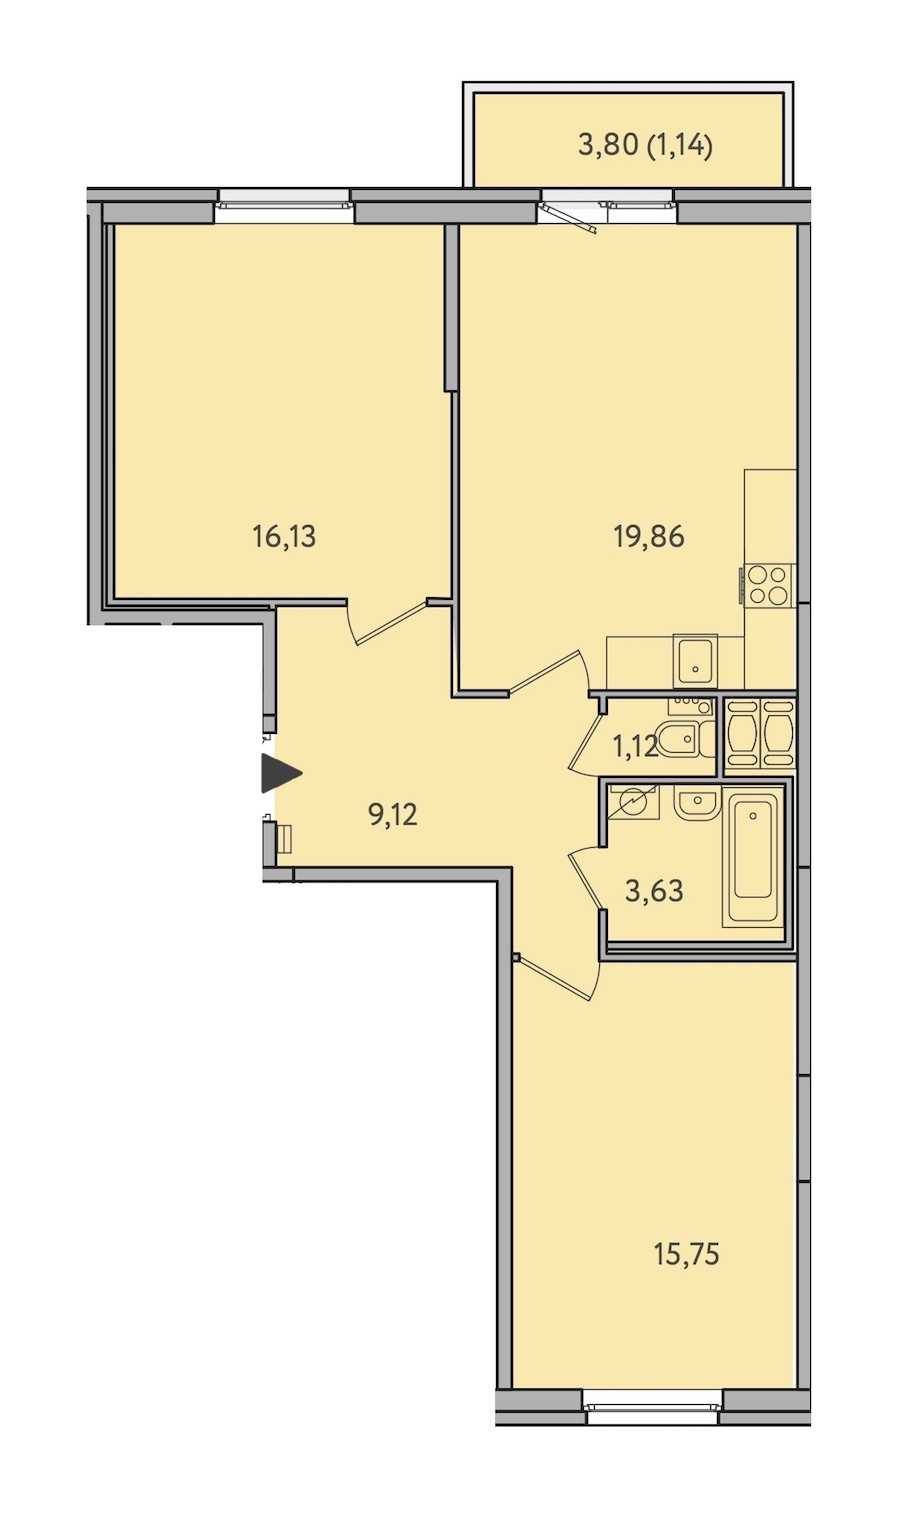 Двухкомнатная квартира в : площадь 66.75 м2 , этаж: 10 – купить в Санкт-Петербурге